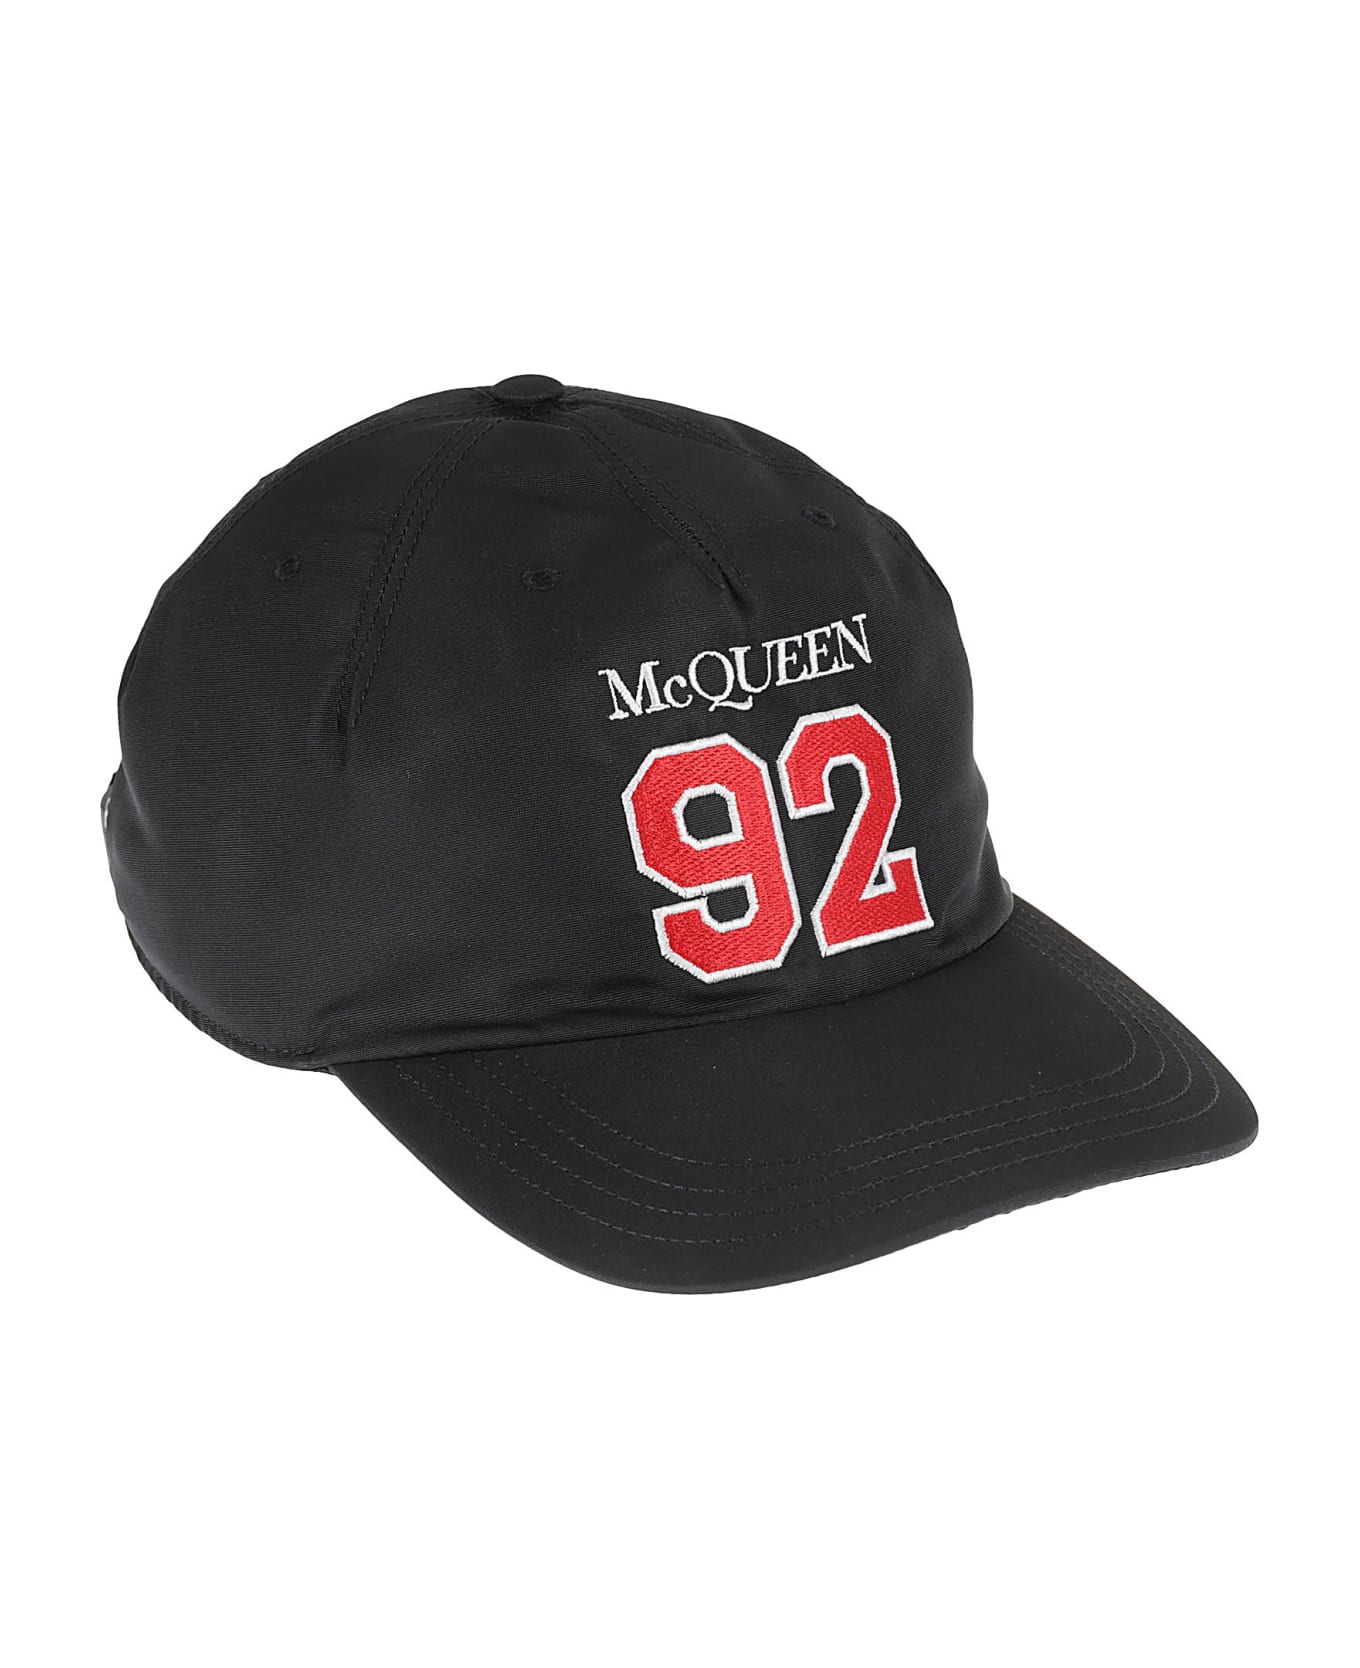 Alexander McQueen Mcqueen Sport Hat - Black/red